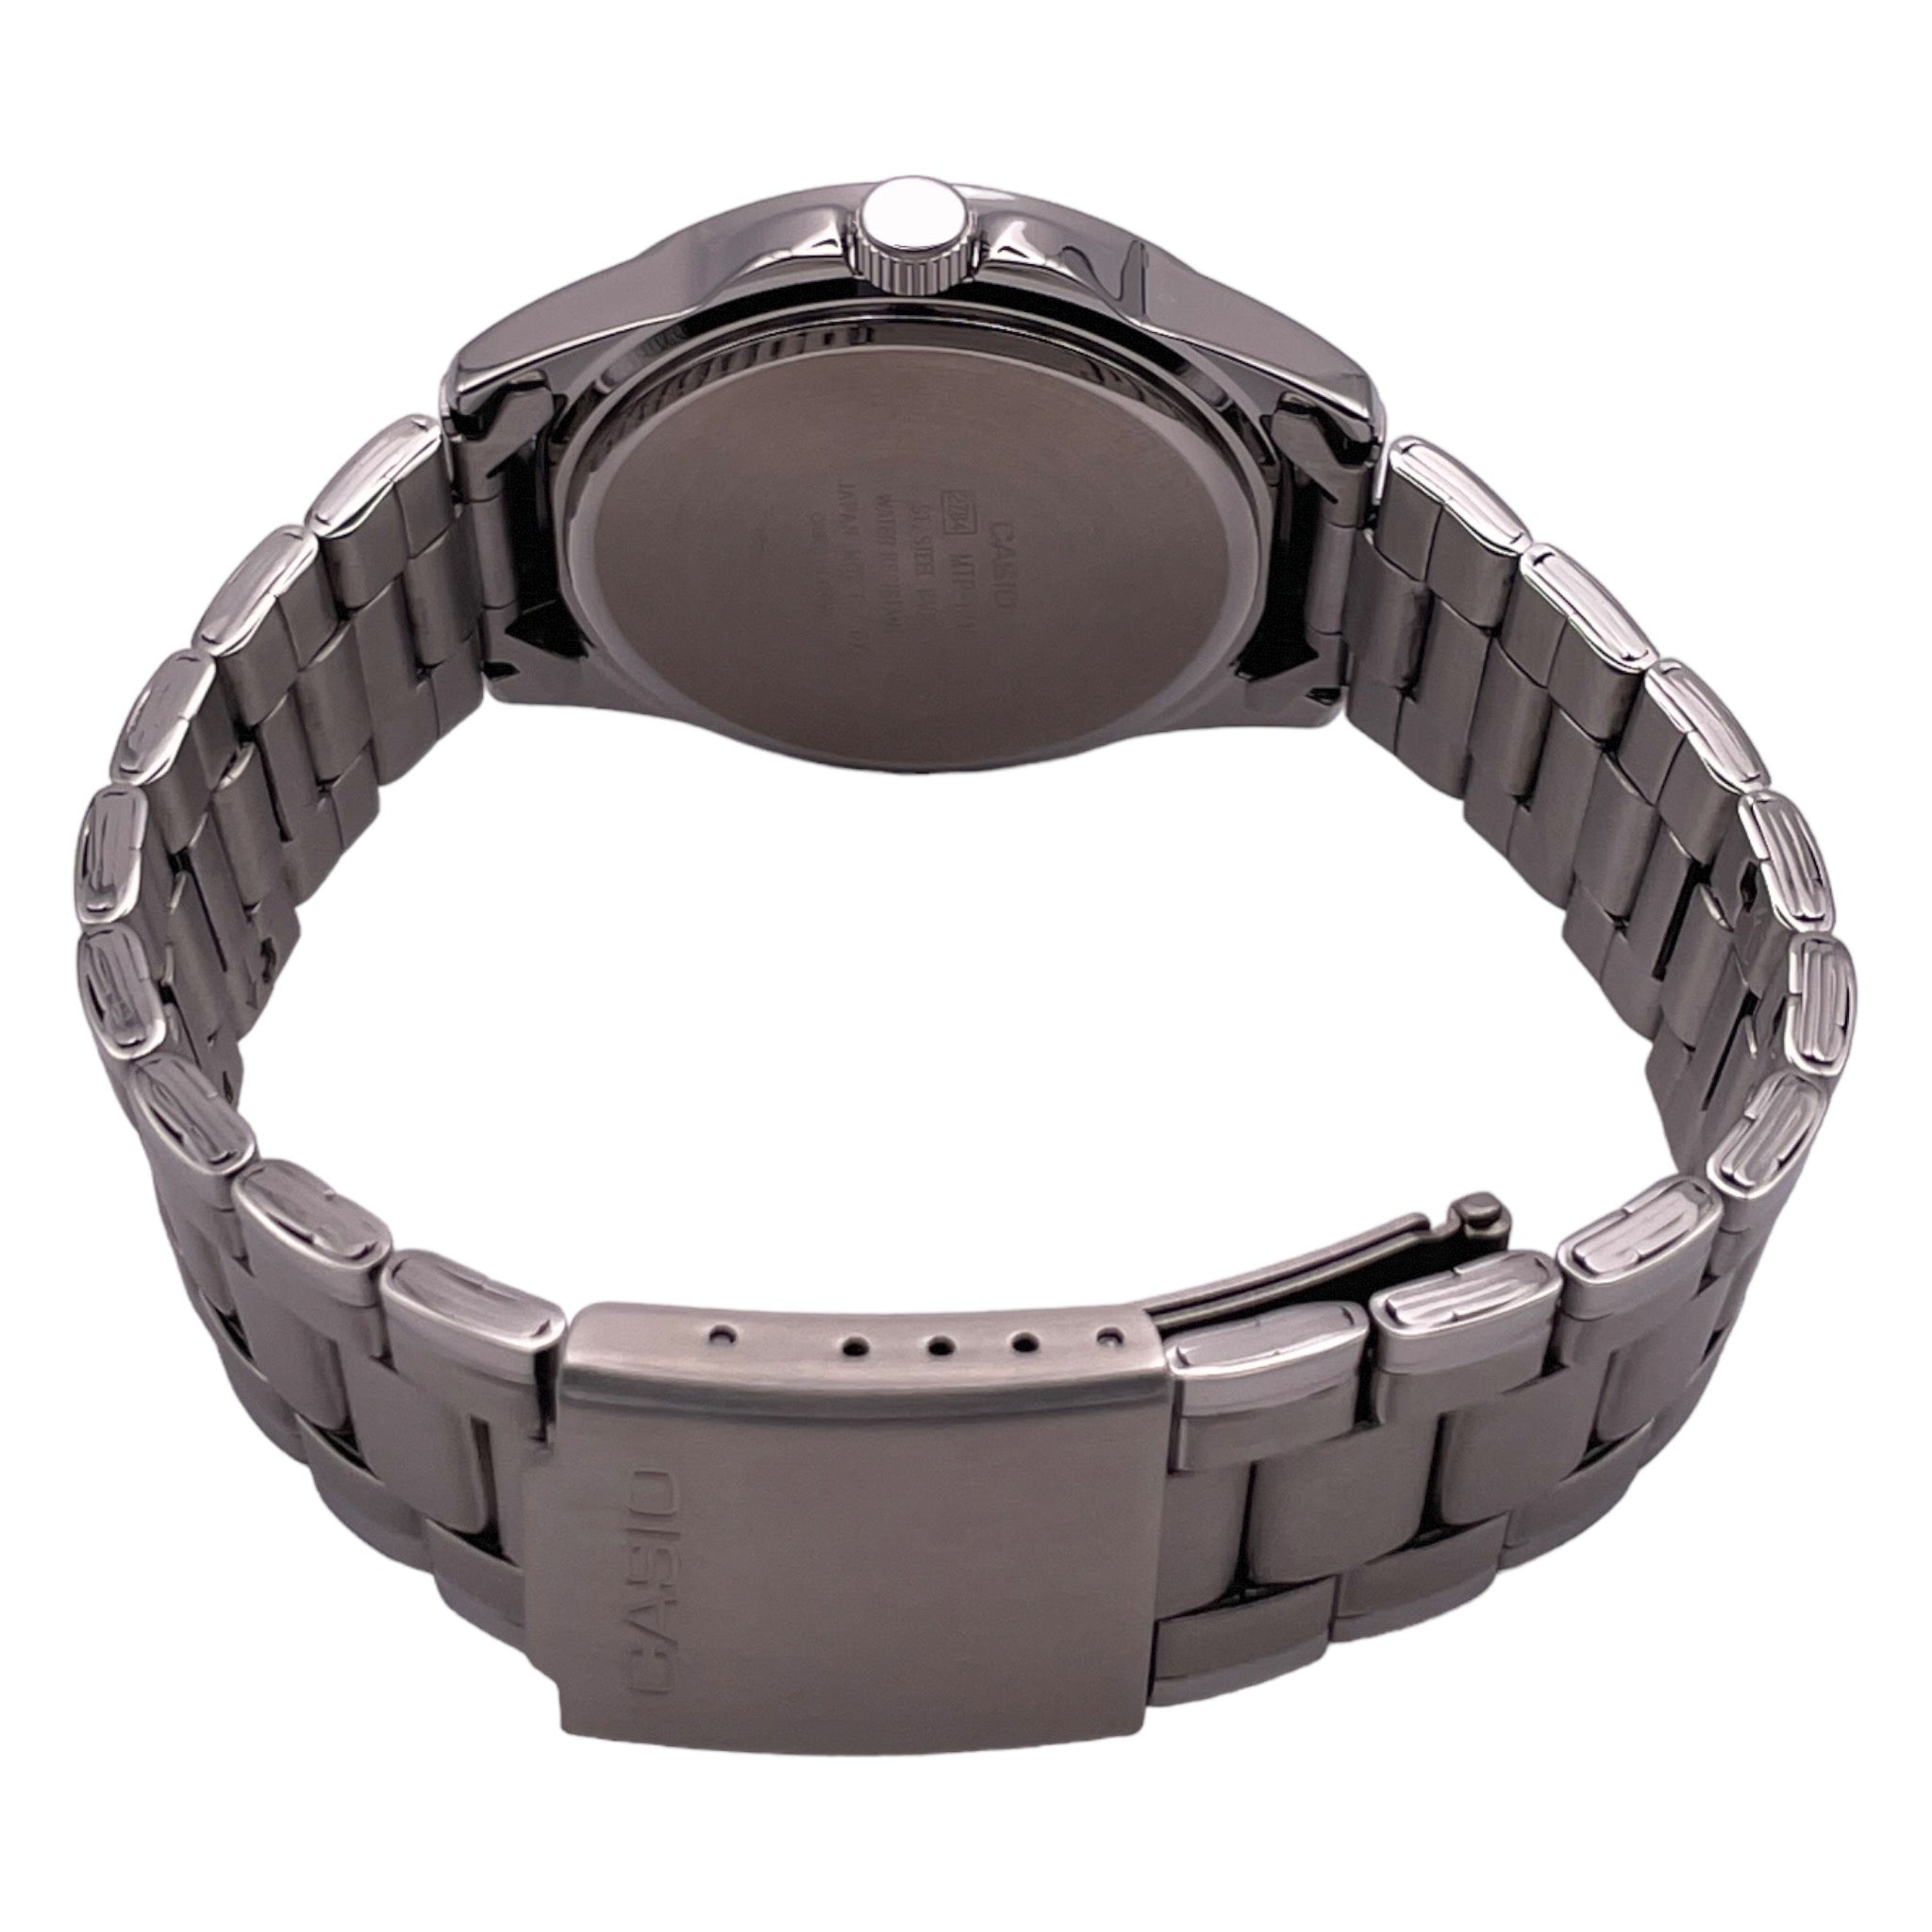 Casio Arabic Dial Men's Watch MTP-1215A-1B3 Black